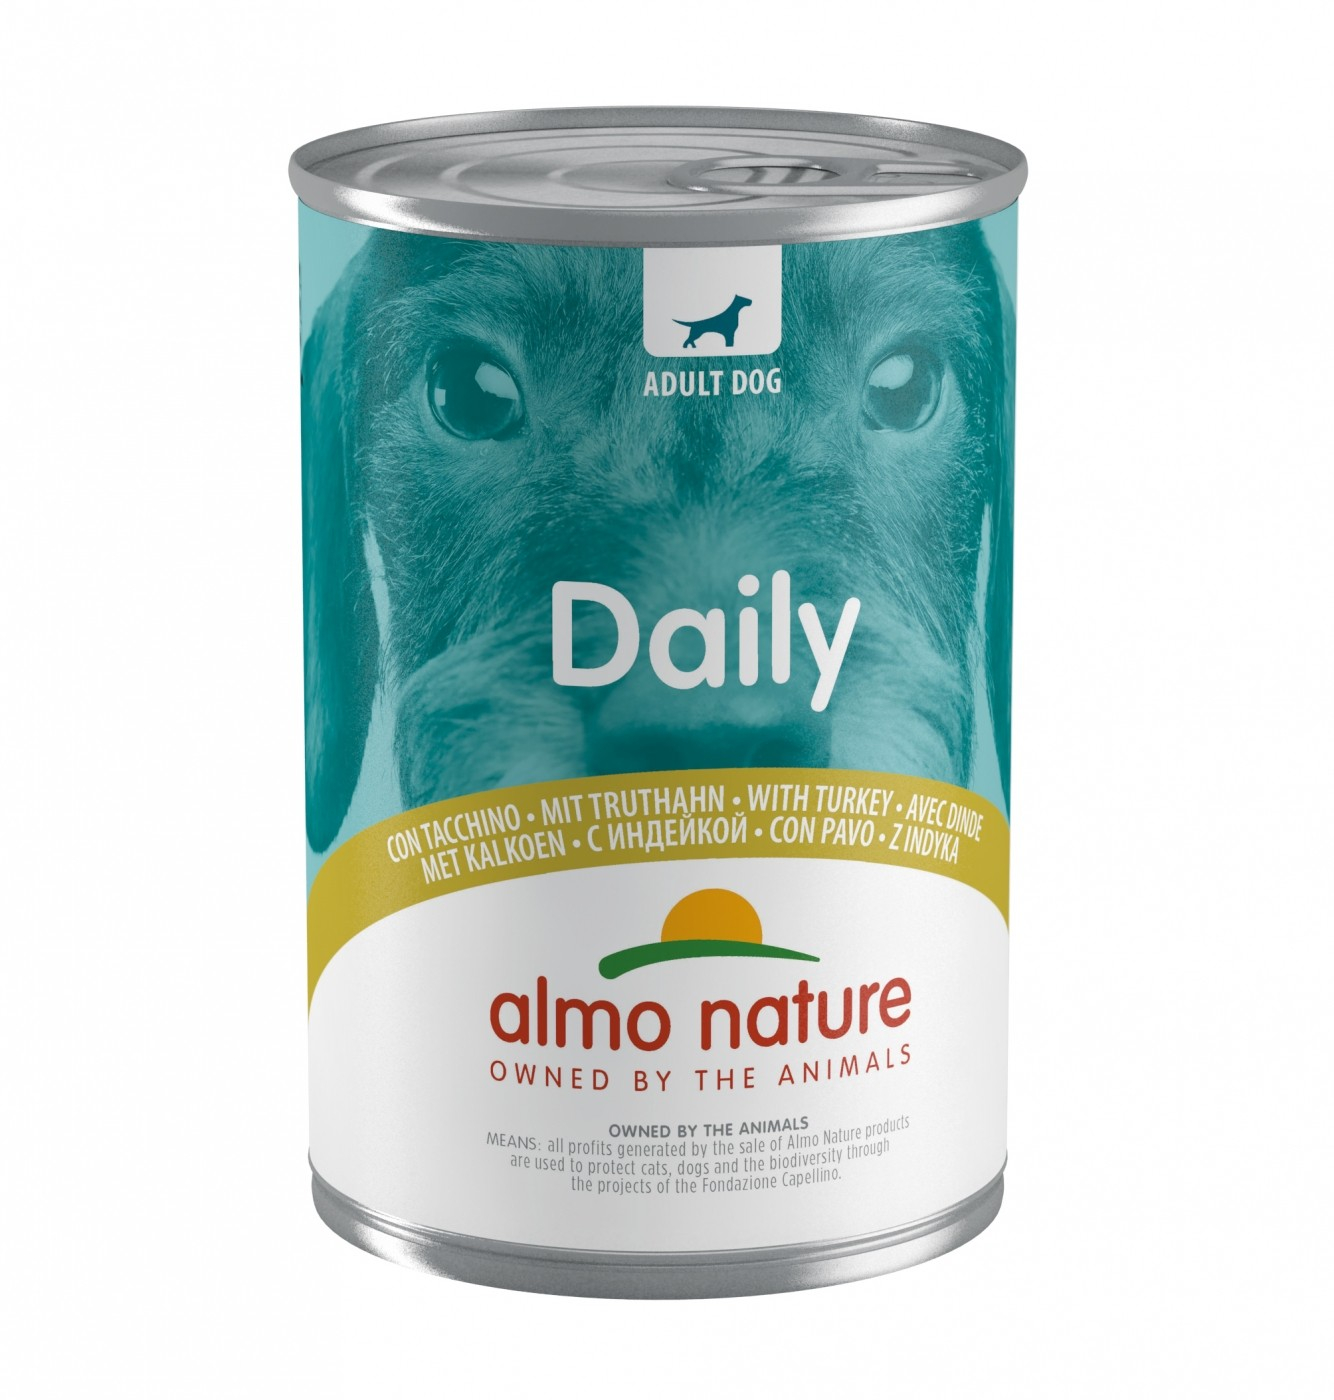 Almo Daily menu für erwachsenen Hunde - verschiedenen Geschmacksrichtungen